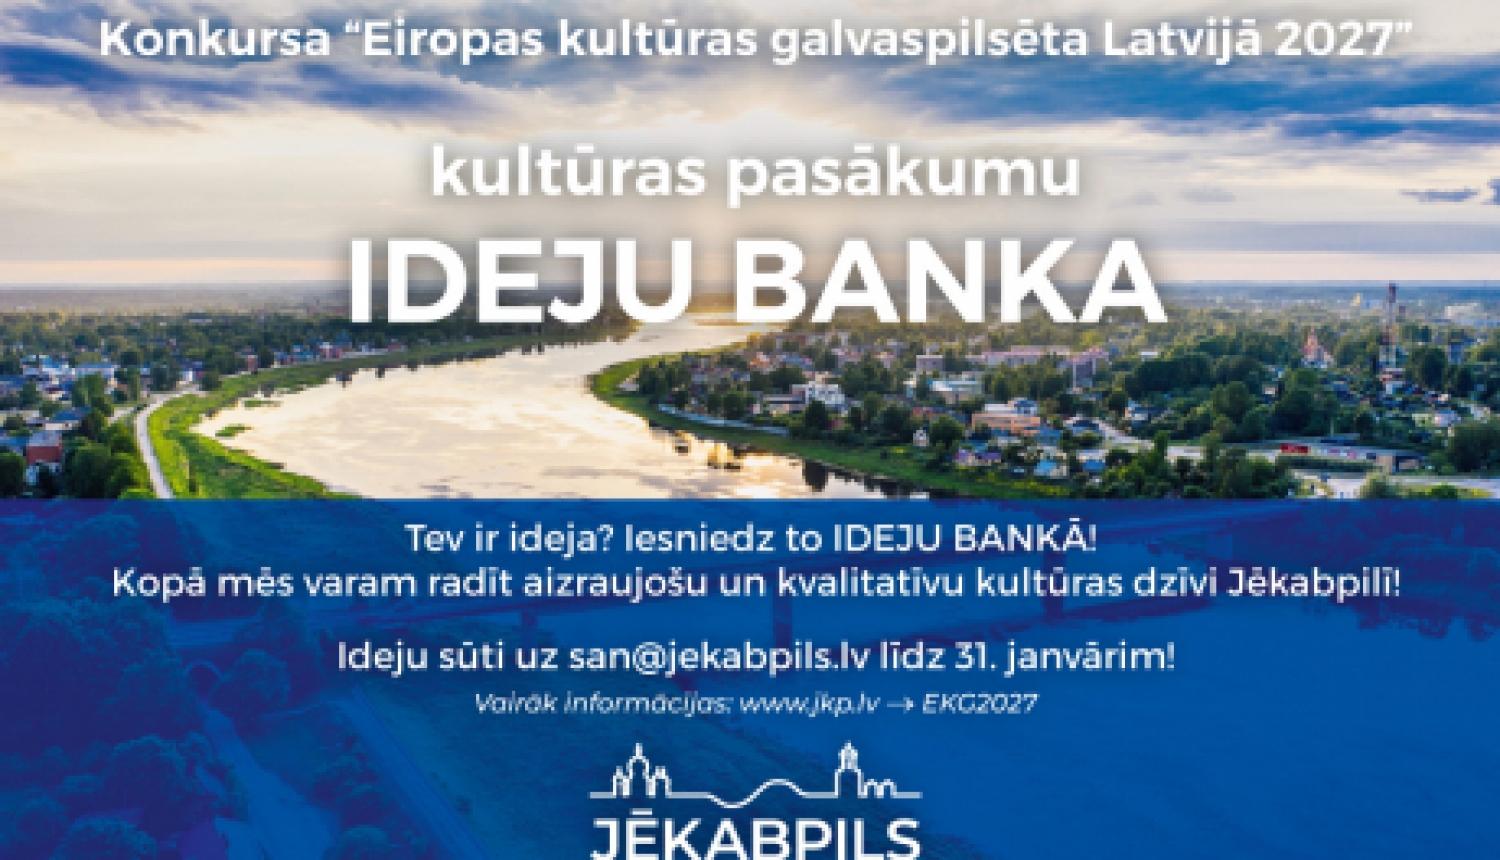 Turpinās akcija “IDEJU BANKA” Jēkabpils dalībai konkursa “Eiropas kultūras galvaspilsēta 2027” atlasē